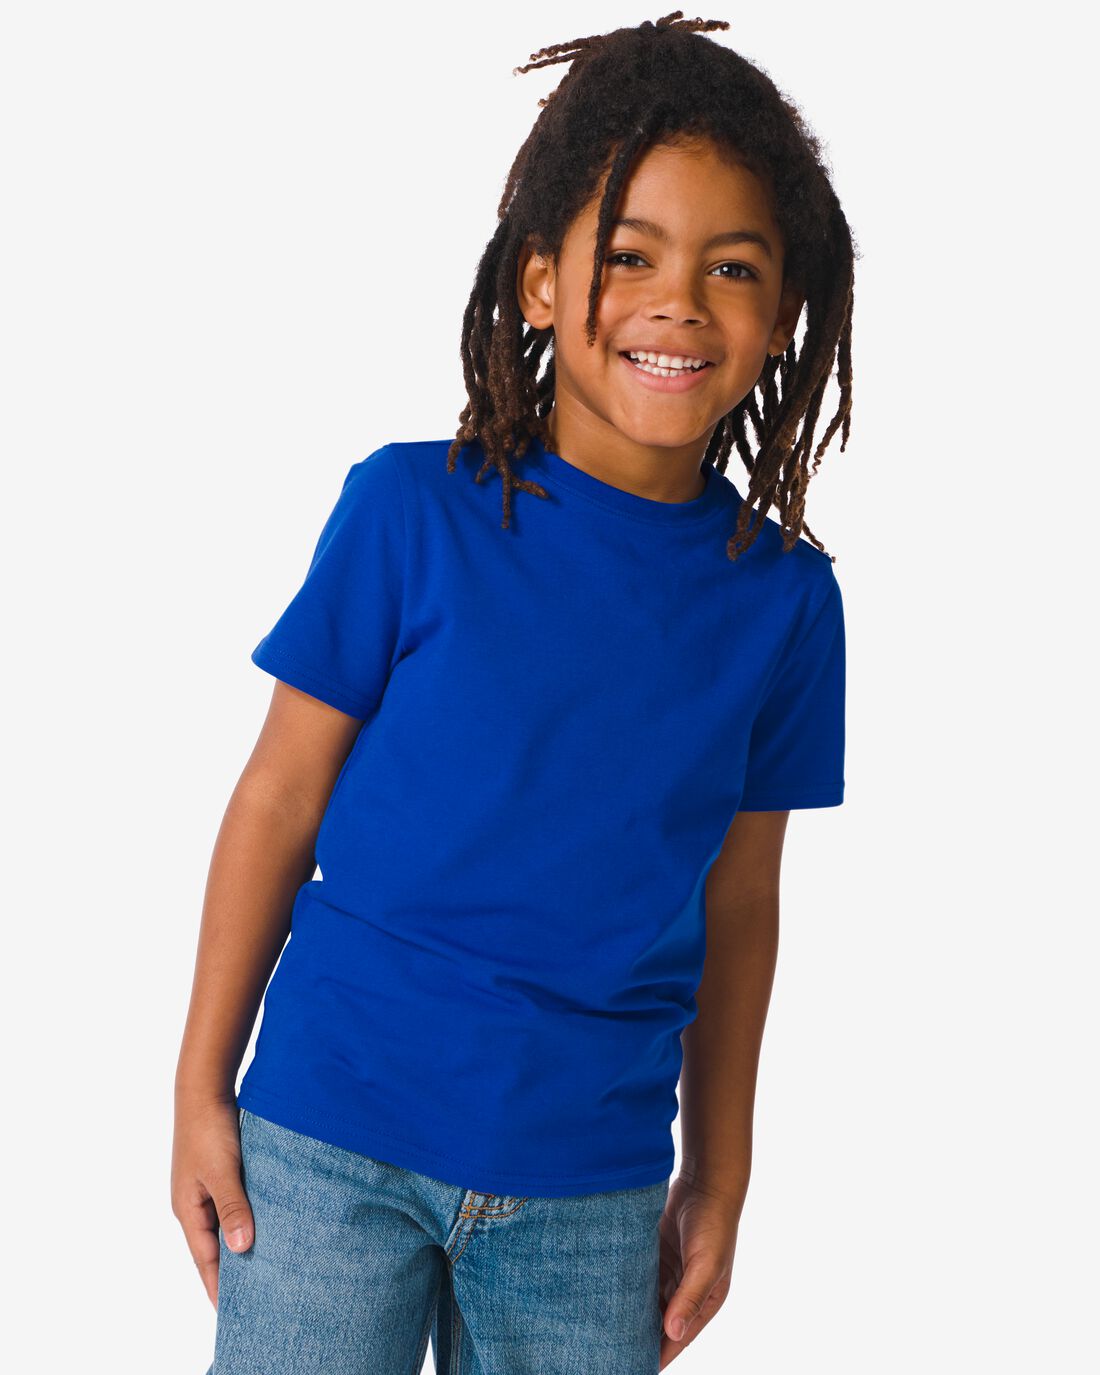 HEMA Kinder T-shirt Blauw (blauw)